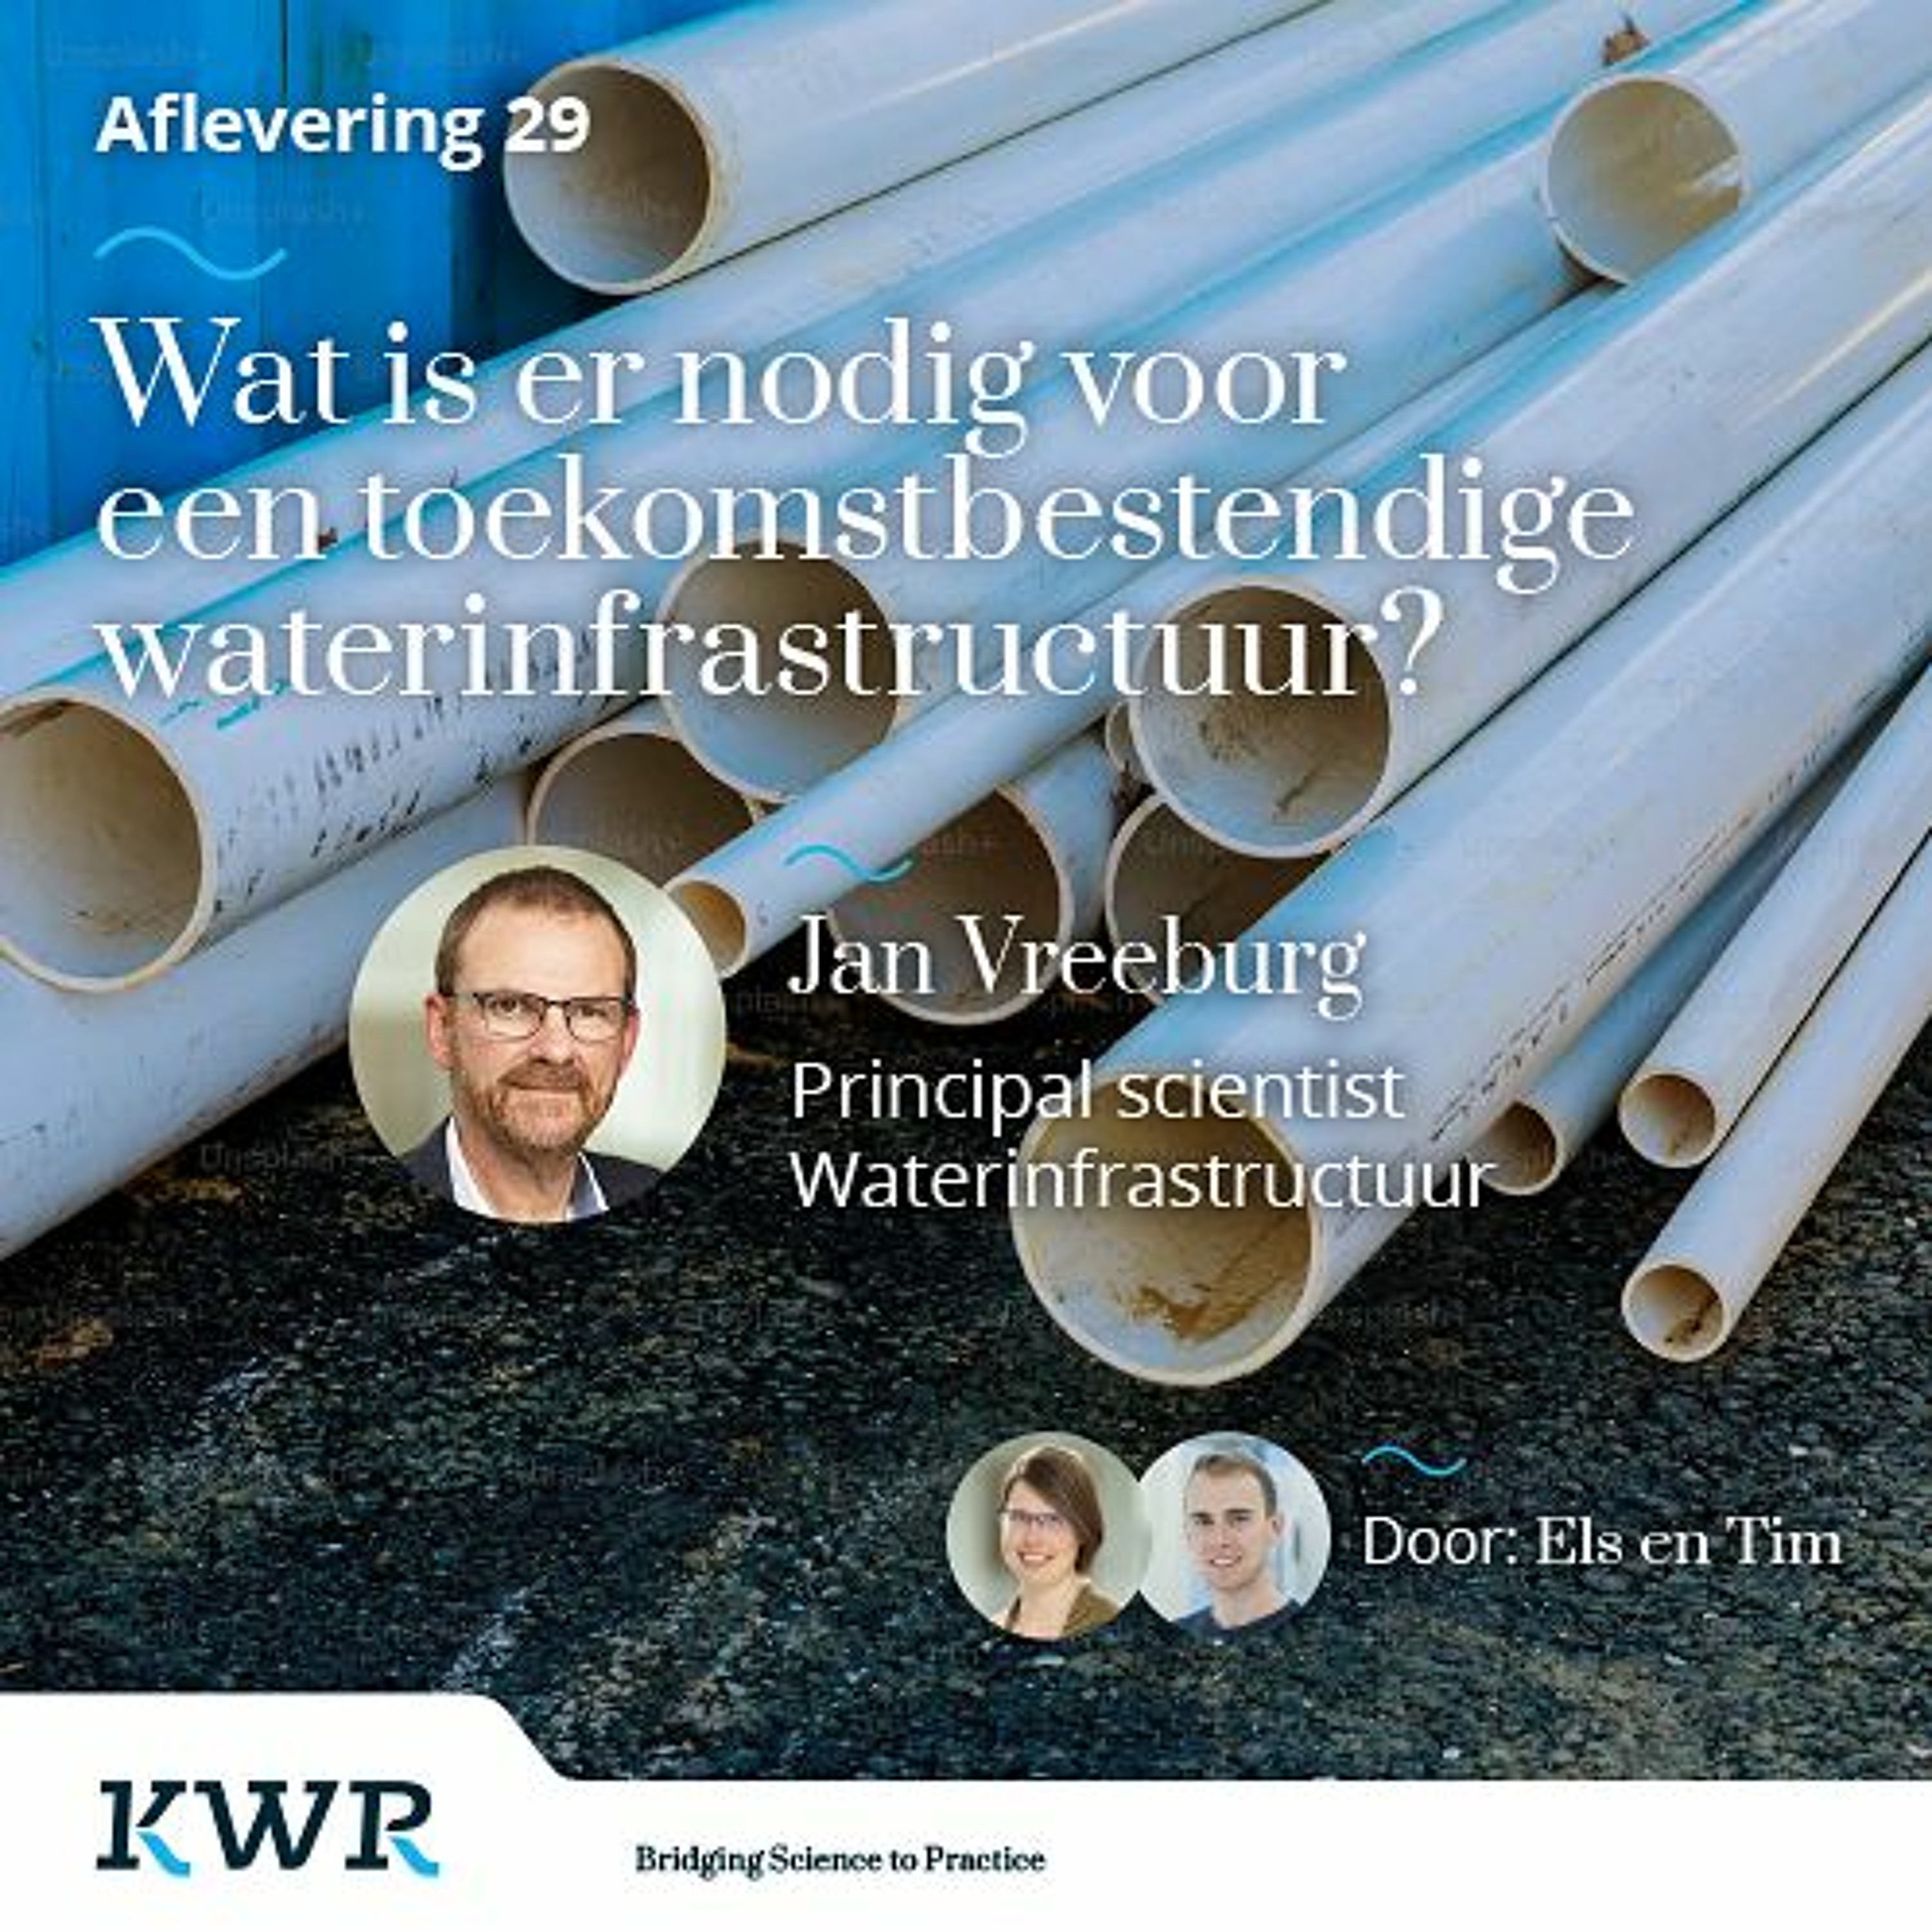 Aflevering 29 - Wat is er nodig voor een toekomstbestendige waterinfrastructuur? Met: Jan Vreeburg